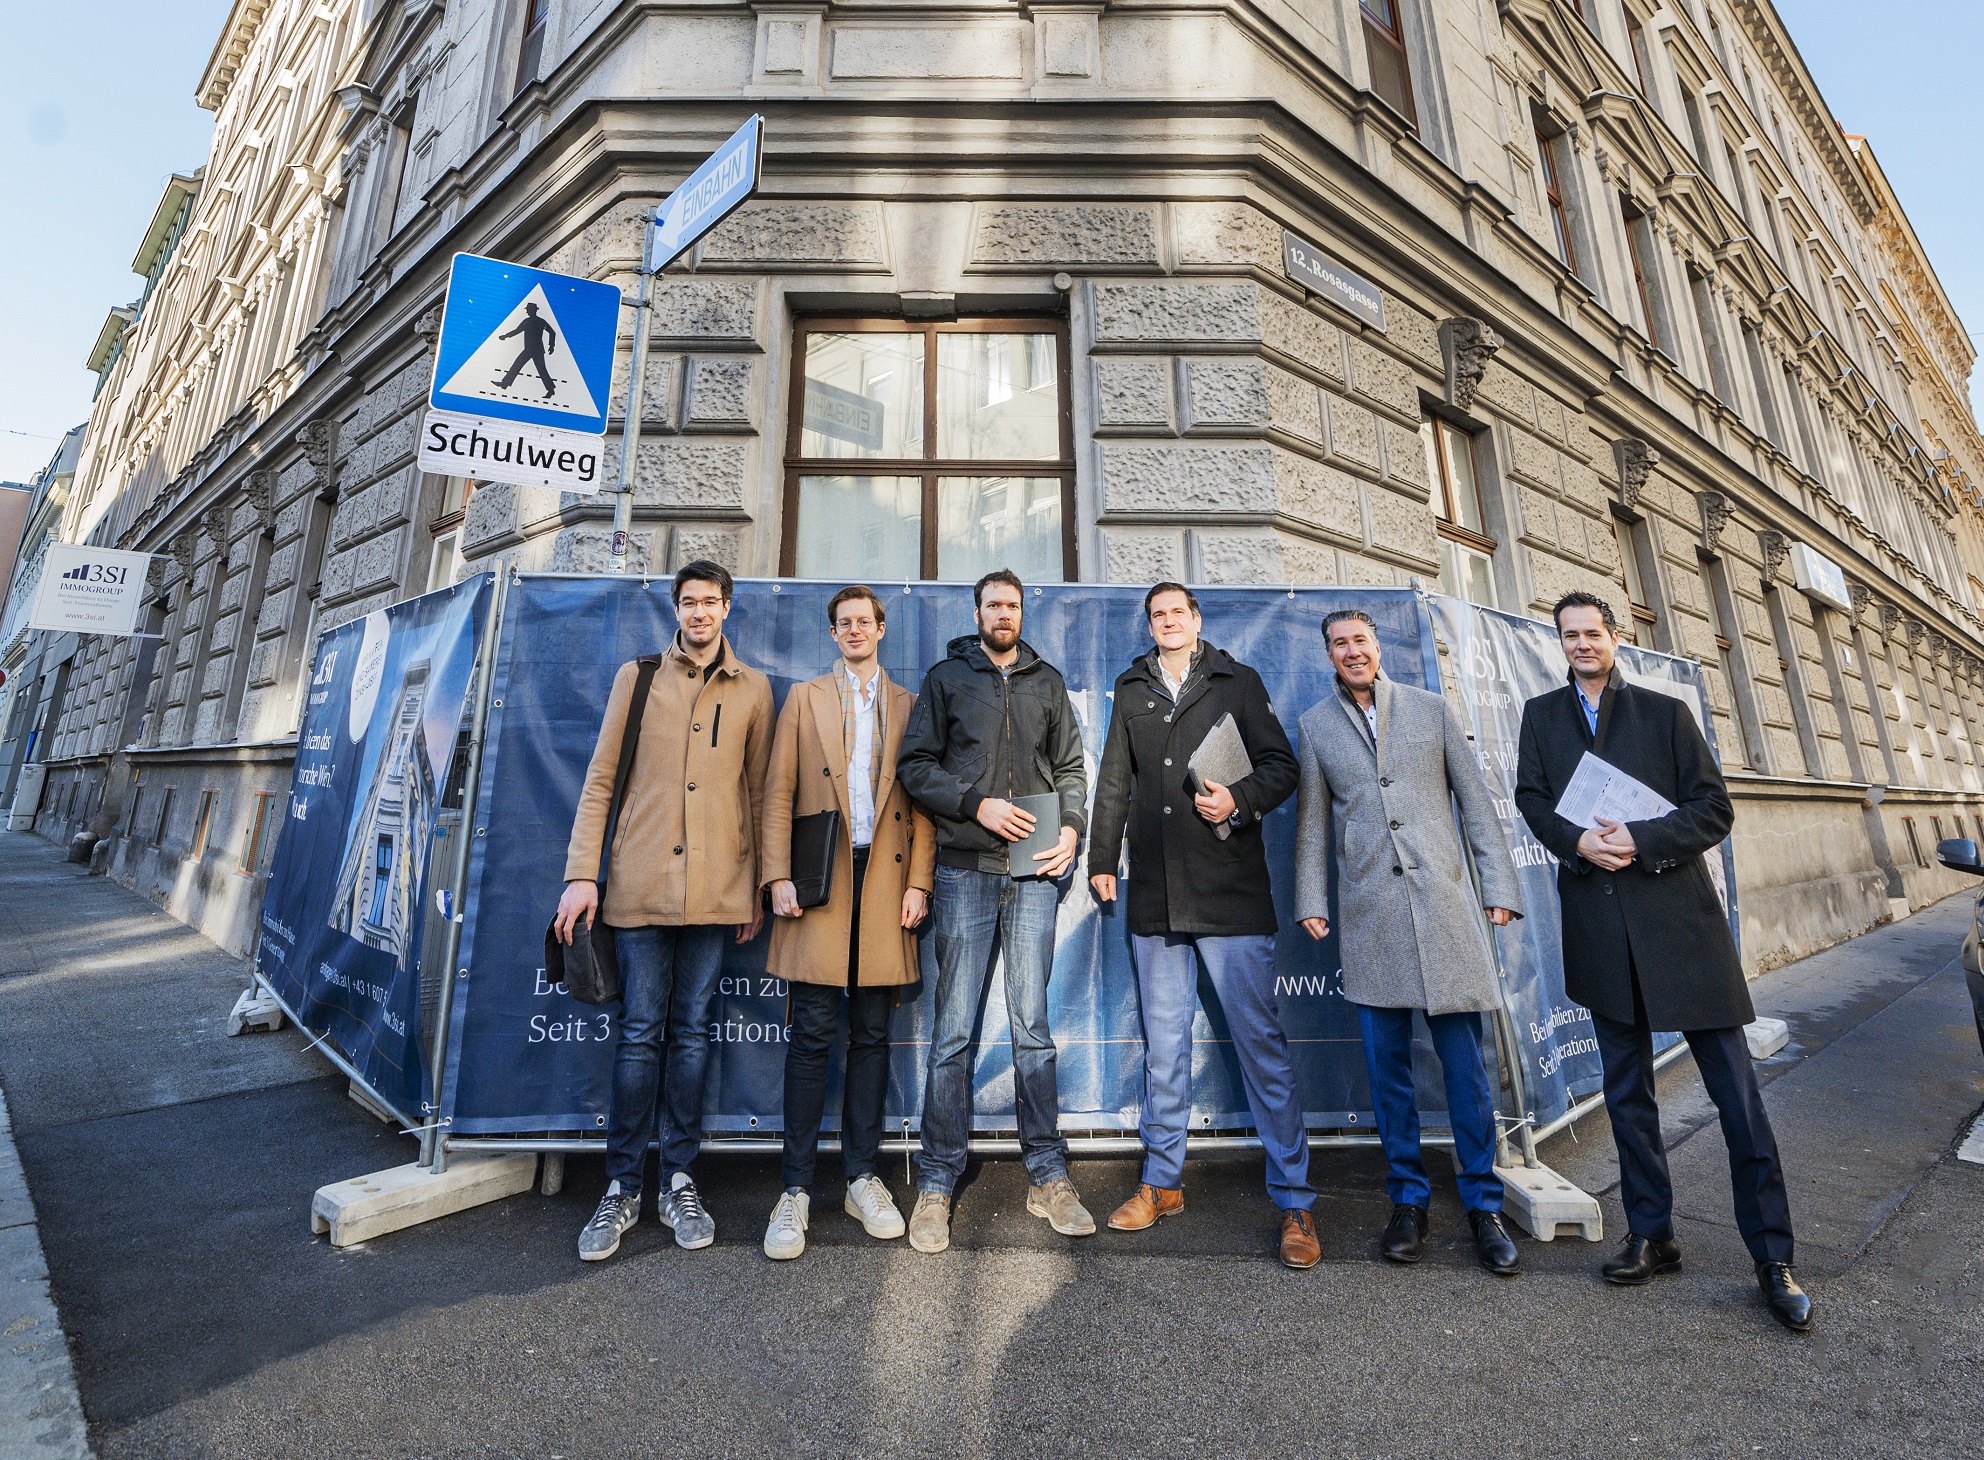 Baustart in Wien Meidling: Das Bauteam der 3SI Immogroup von 3SI-Geschäftsfüher Michael Schmidt (2. v.r.) vor dem Altbau, der bis 2023 durch die 3SI entwickelt wird.